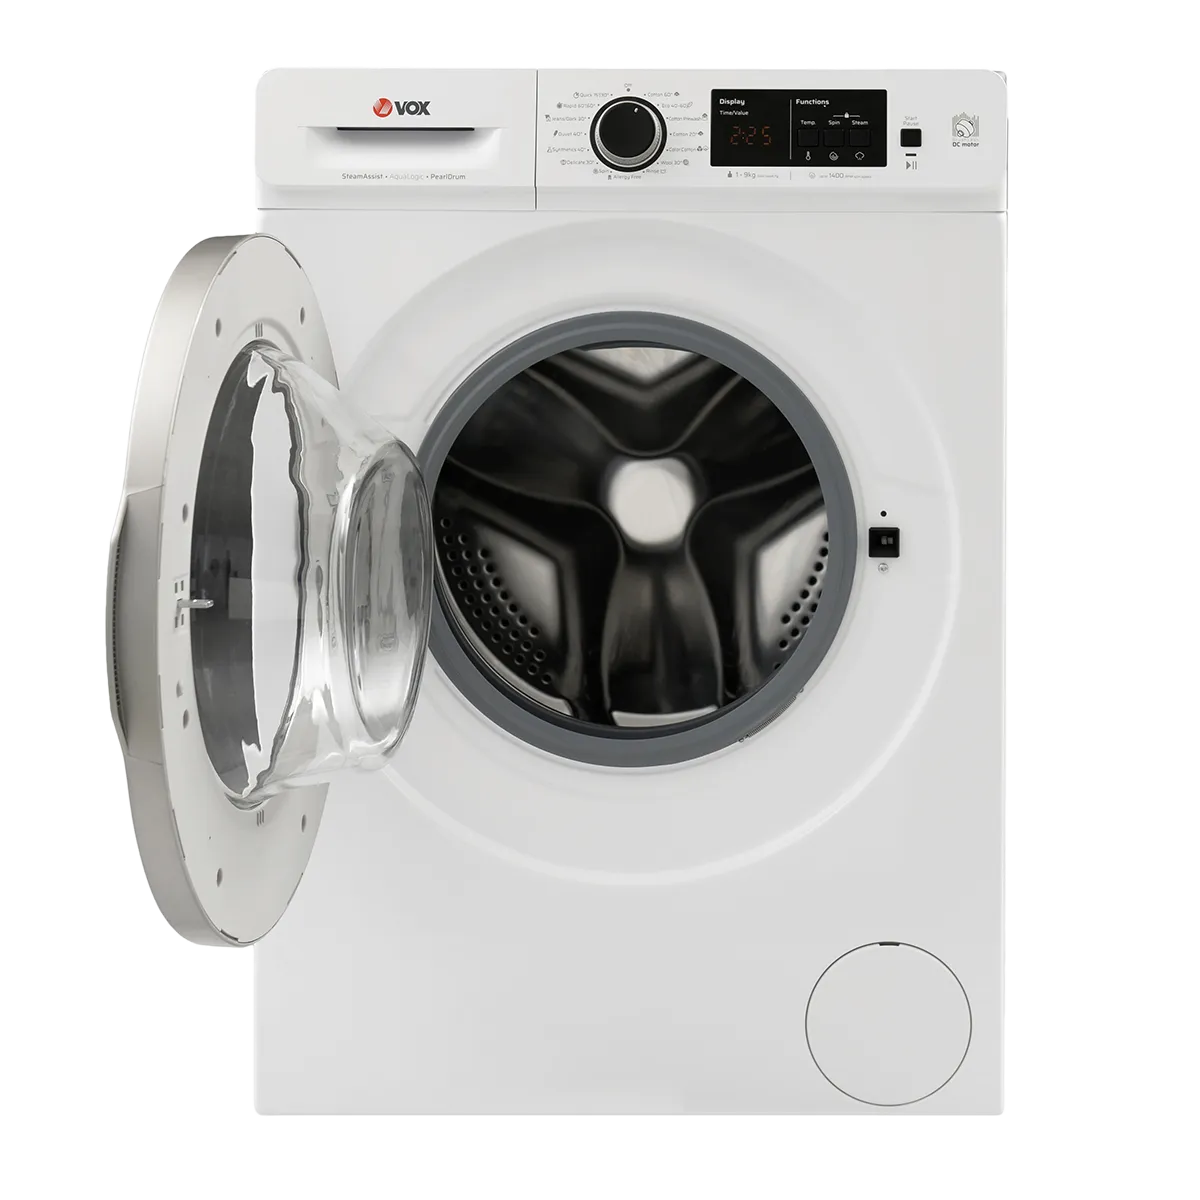 Washing machine WM1490-SAT15ABLDC 